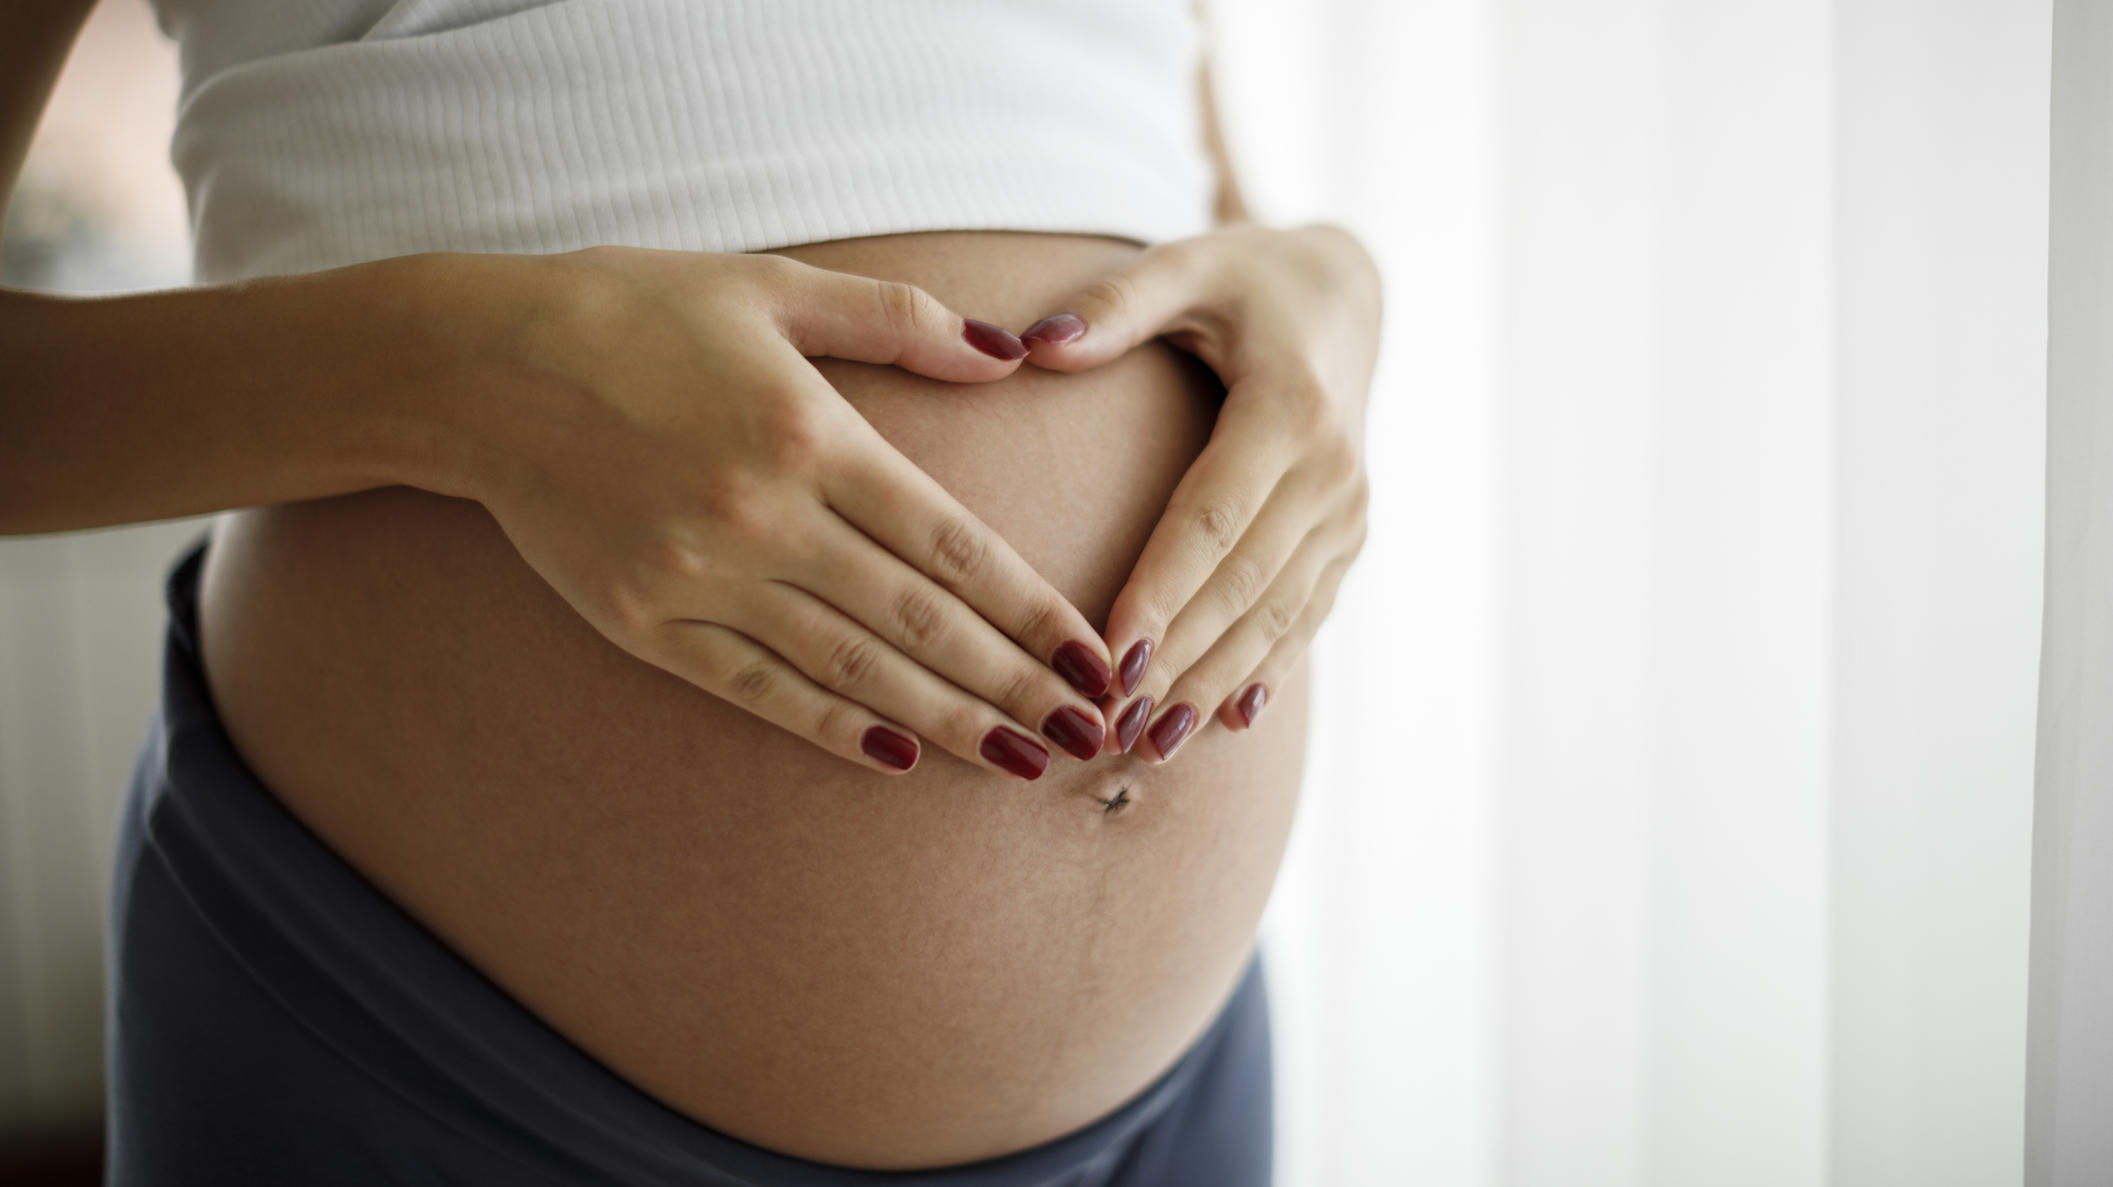 Nach fehlgeburt risiko schwangerschaft Schwangerschaft nach